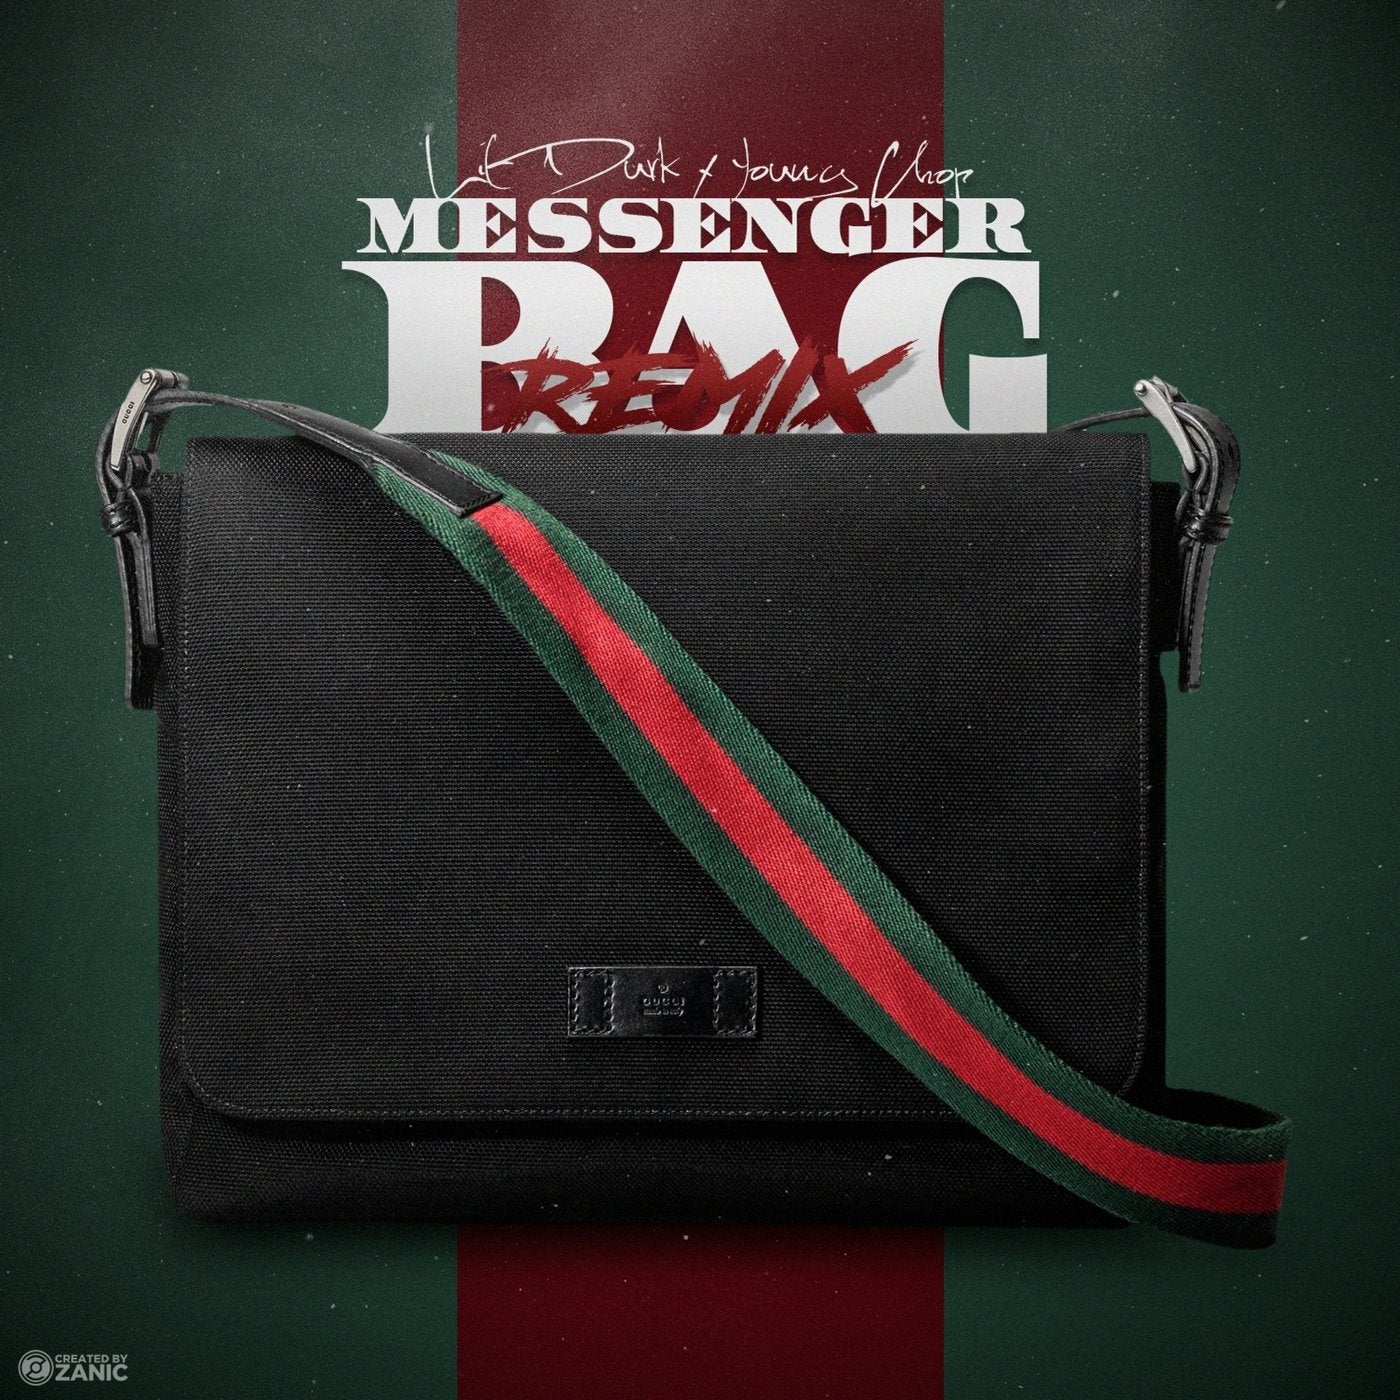 Messenger Bag (Remix) [feat. Lil Durk]